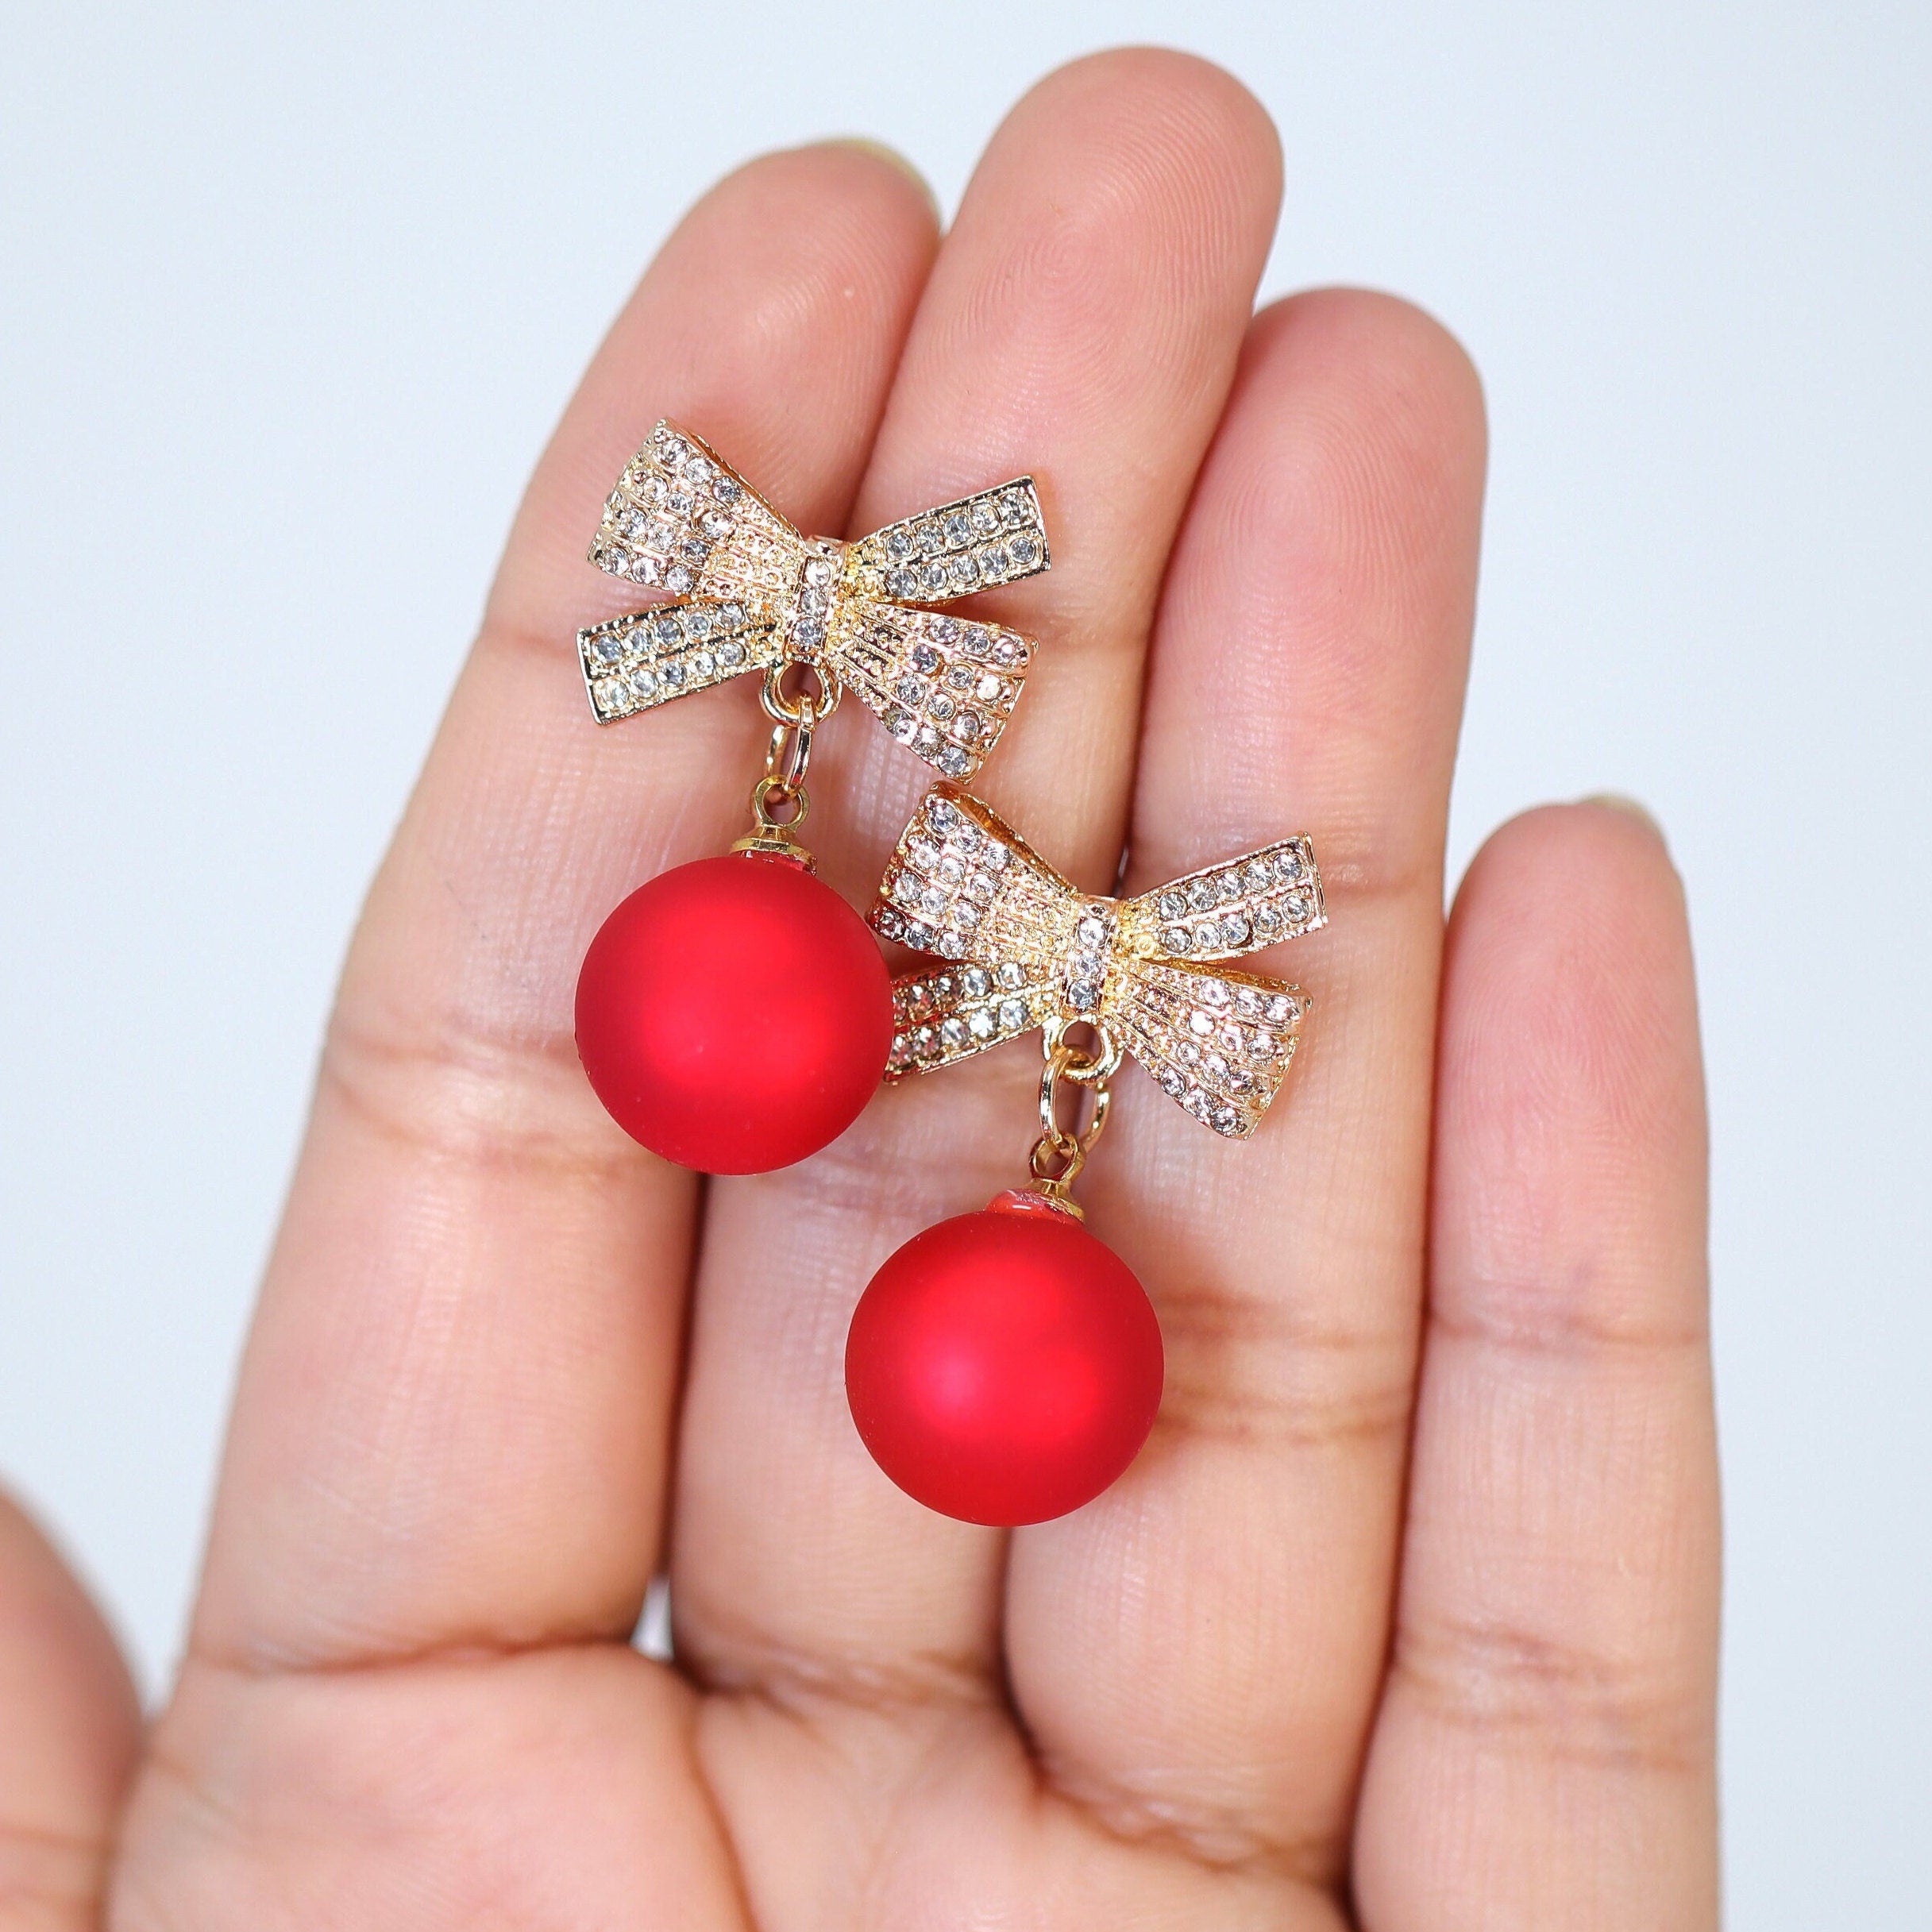 Swarovski Reindeer Christmas Earrings Jewelry Making DIY Per Kit